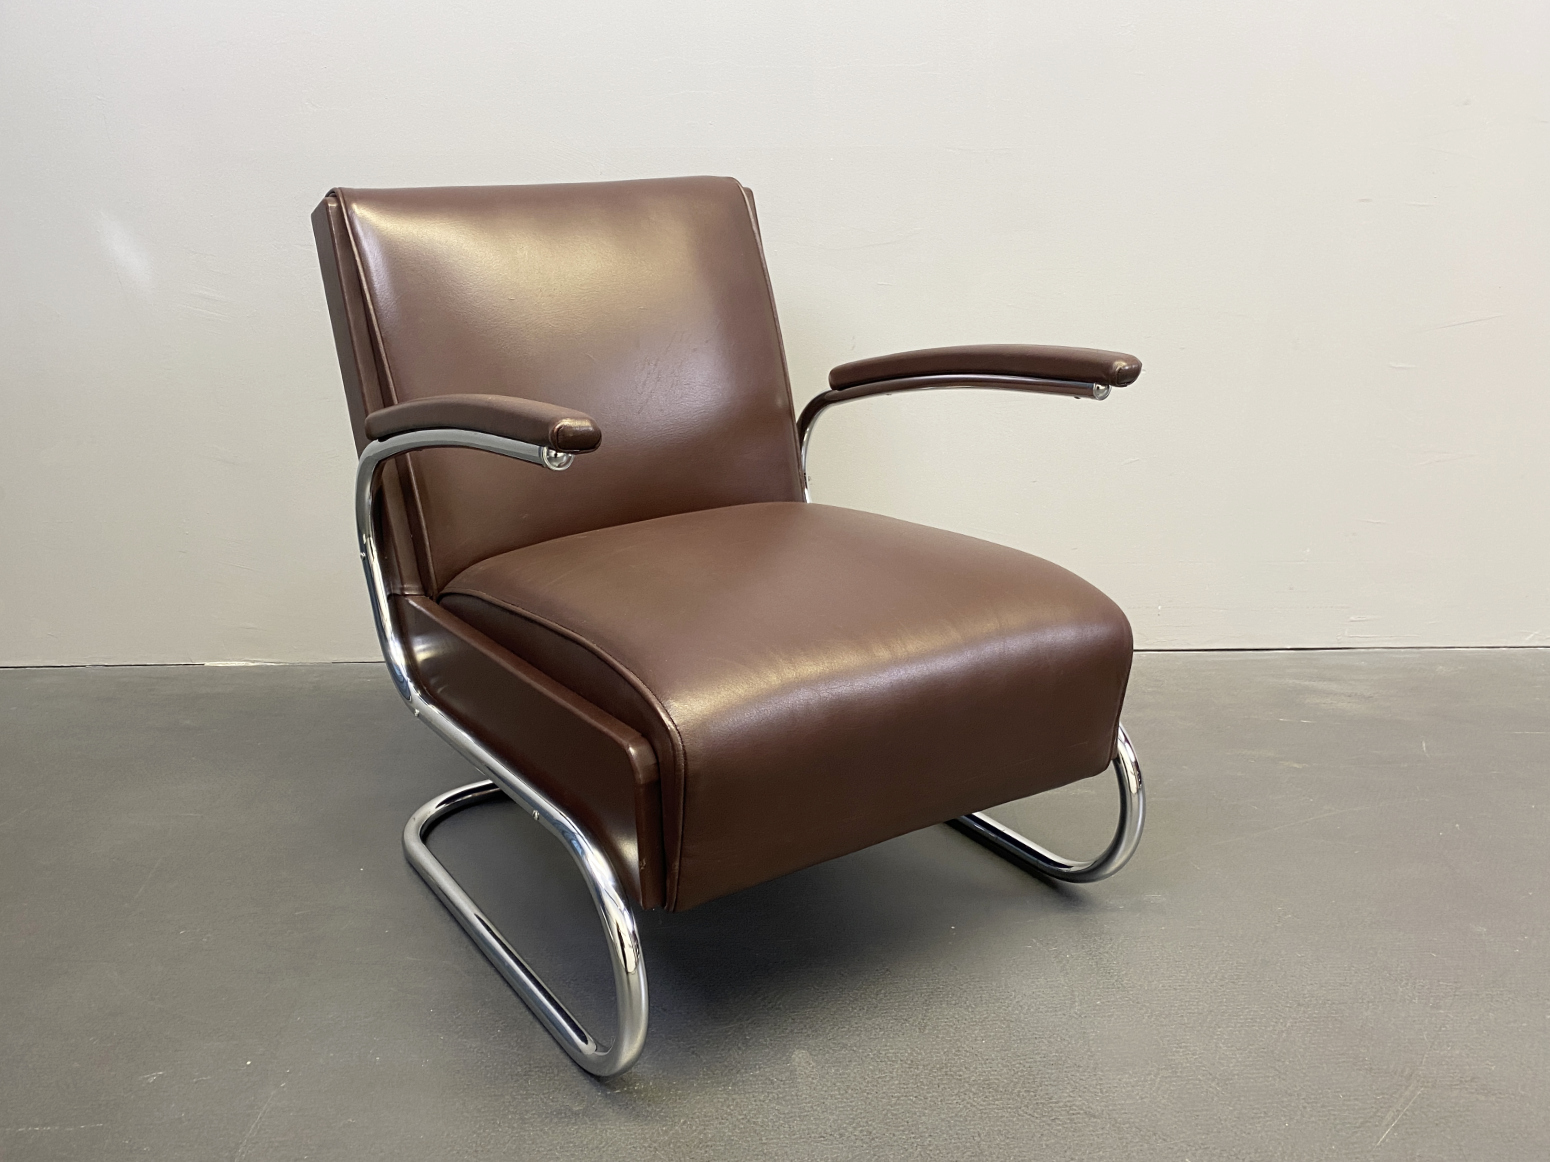 Armlehnsessel / Easy -Chair / Sessel aus Stahlrohr und braunem Leder von Mücke Melder, 1930s.